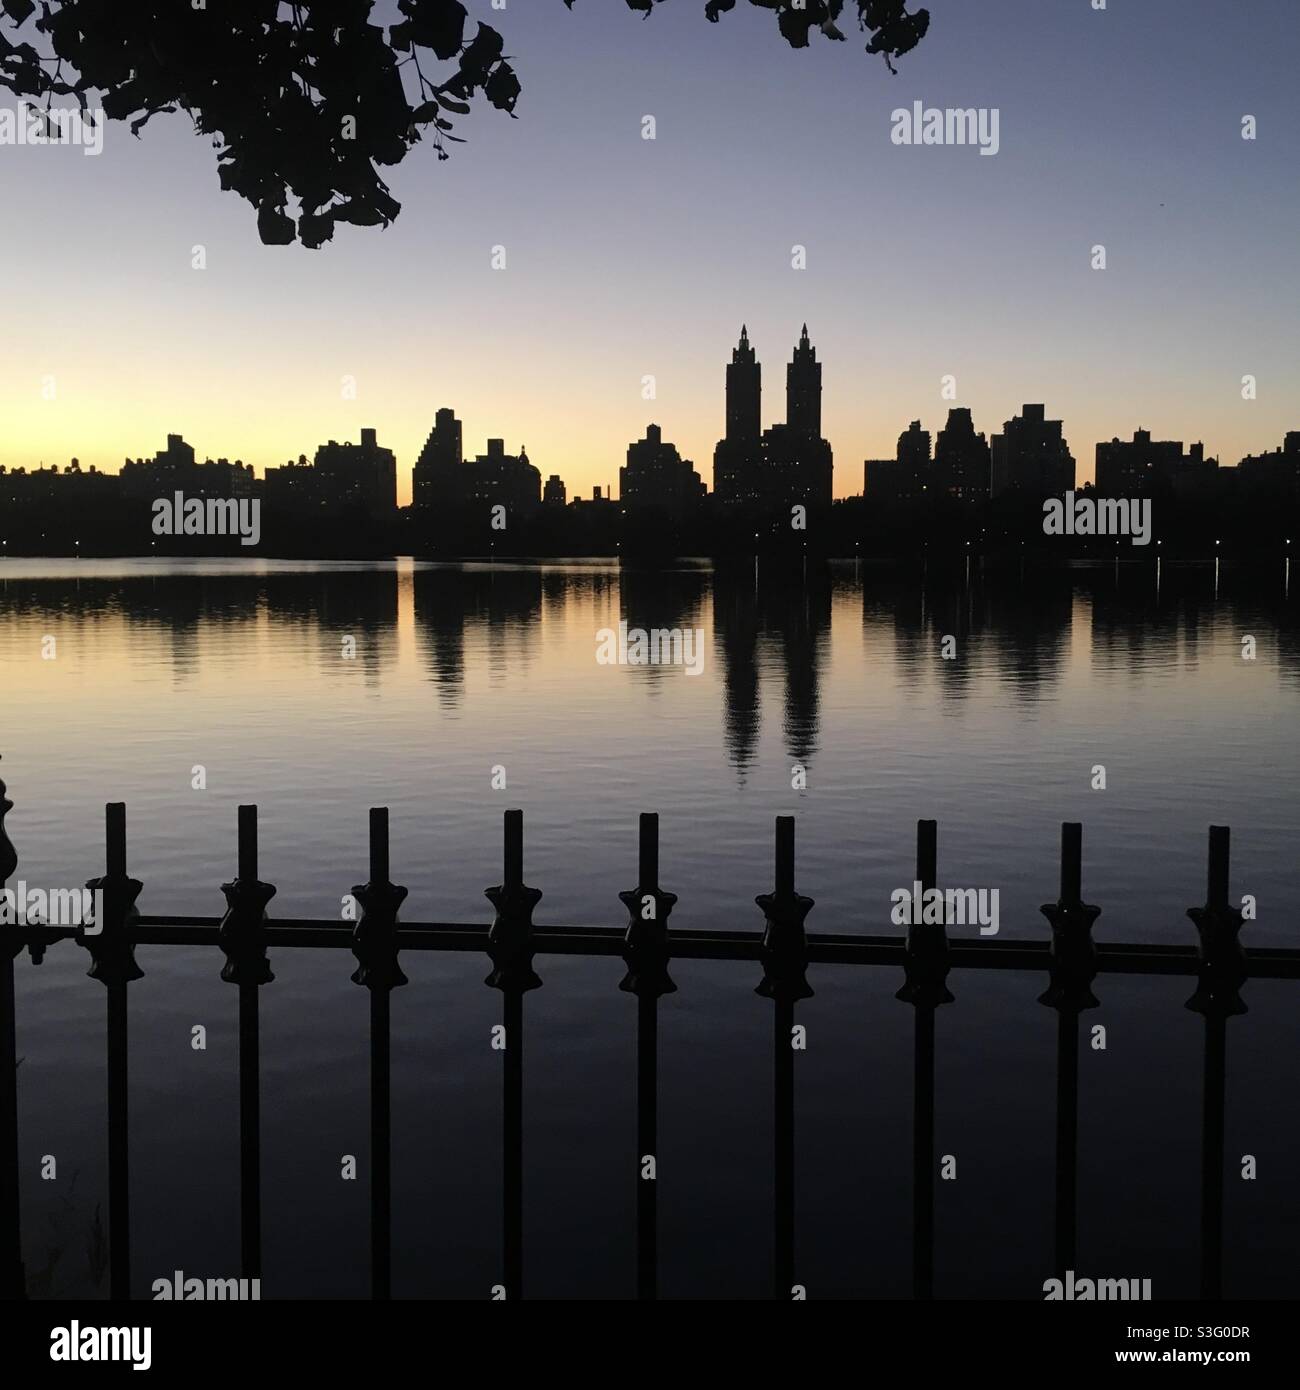 NYC Skyline, coucher de soleil, Central Park Reservoir Banque D'Images